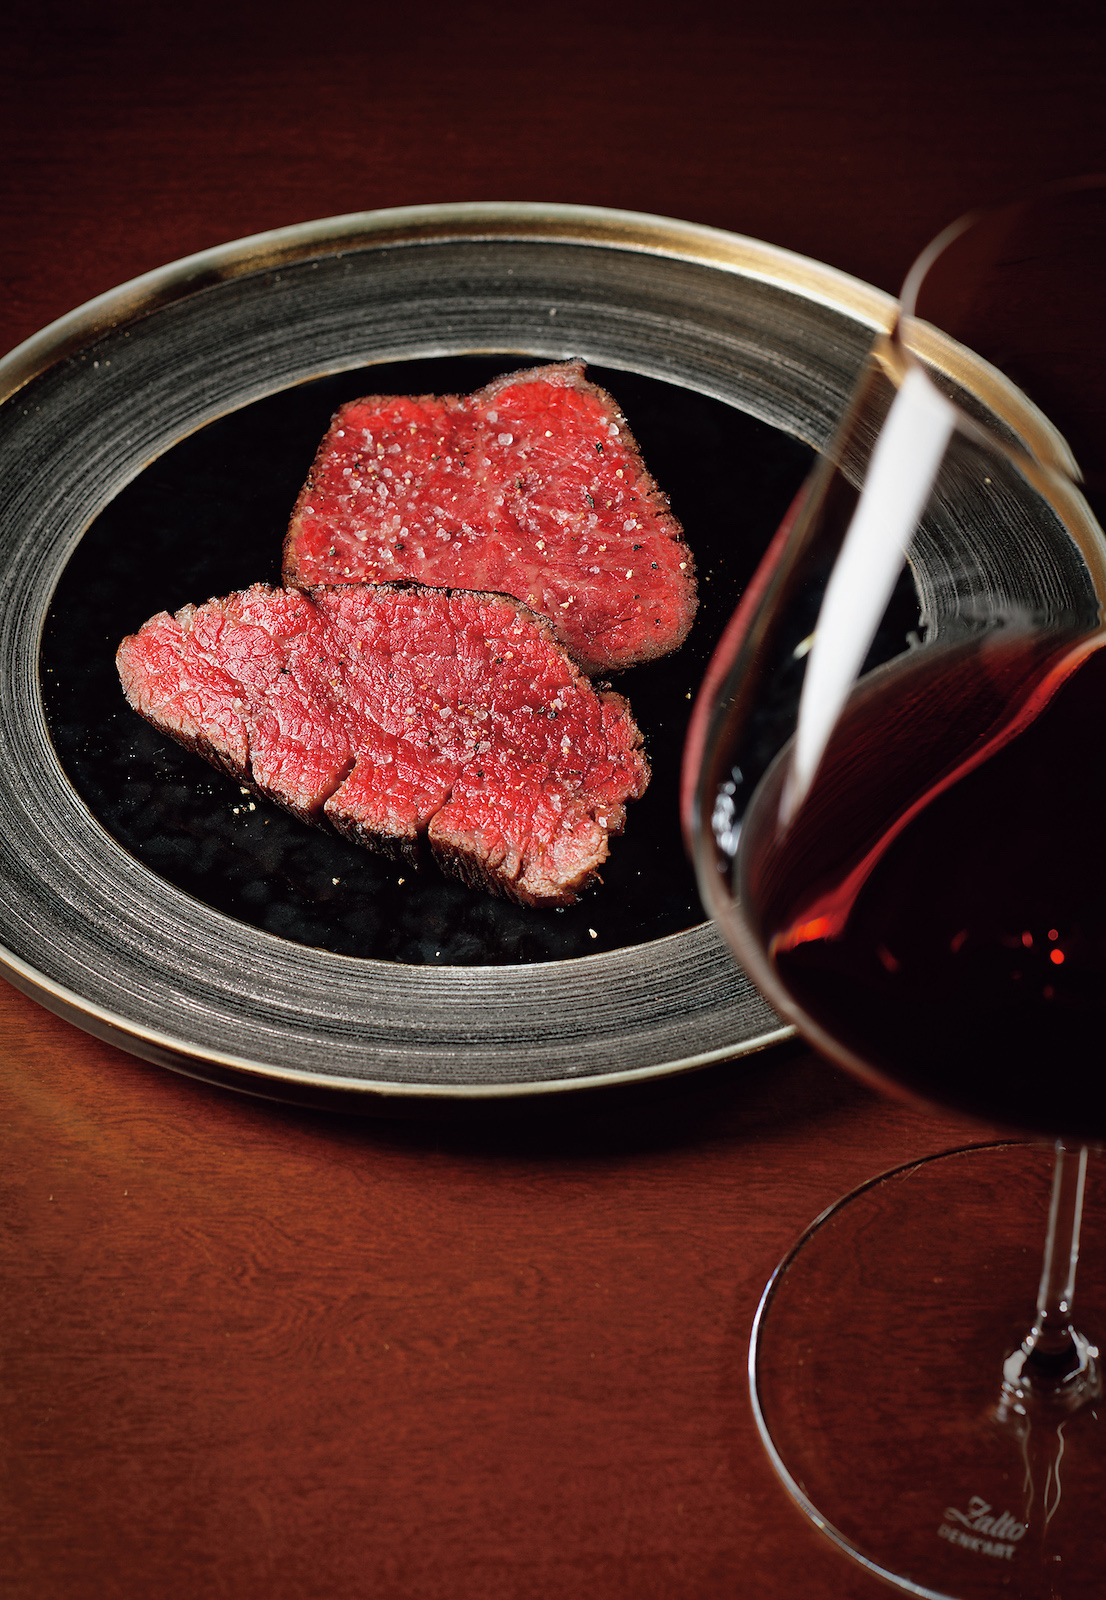 「Steak Éda」の肉